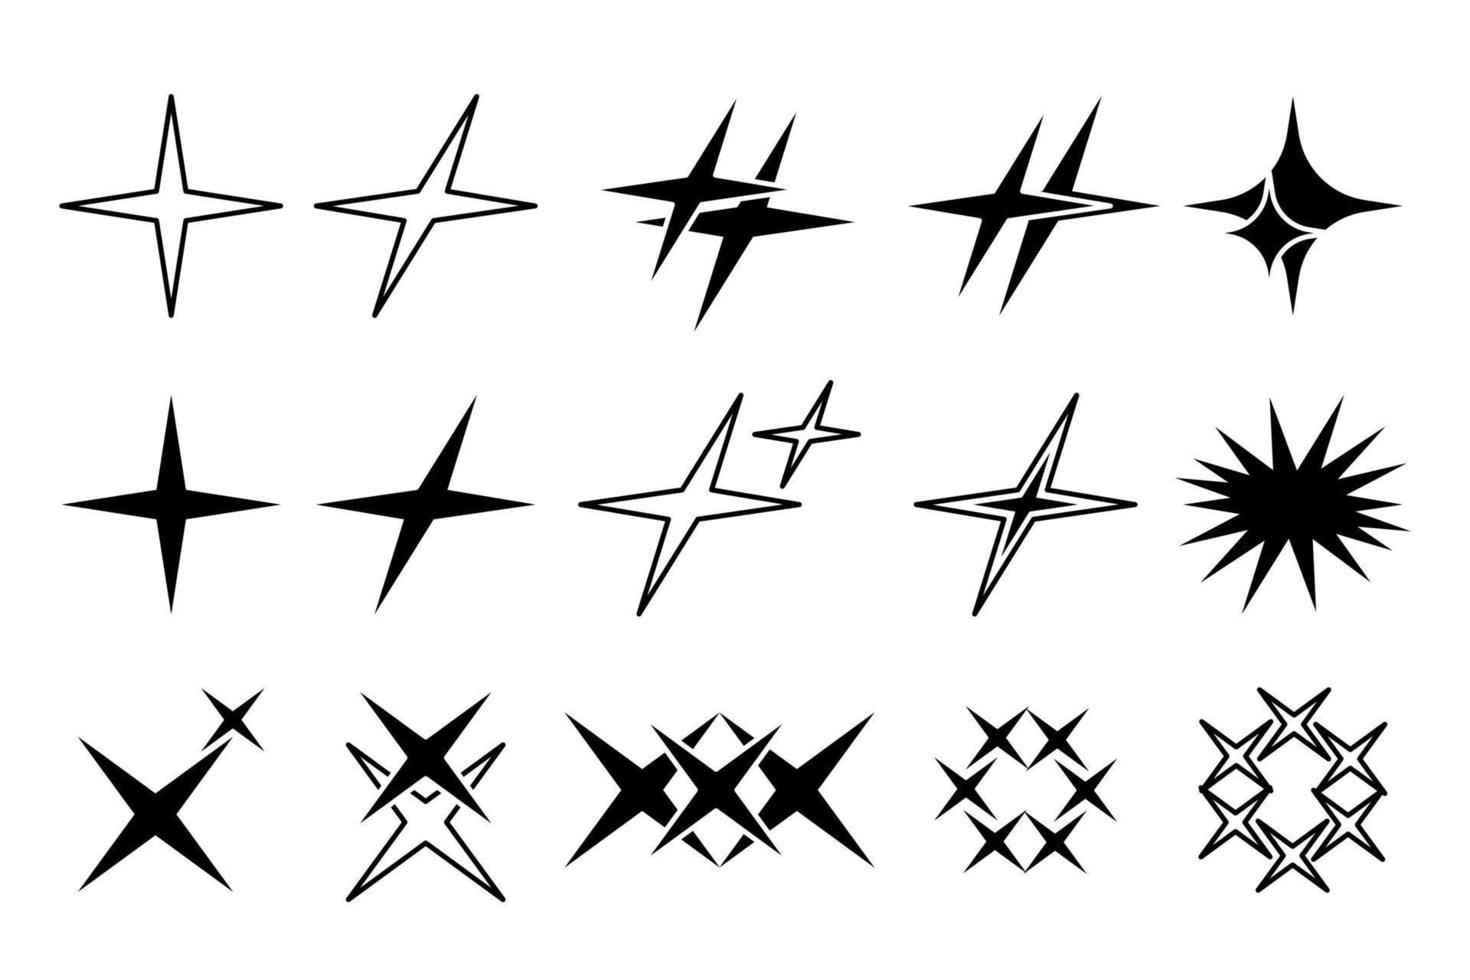 y2k-sterne, starburst und retro-futuristische grafikdesign-ornamente gesetzt. trendige brutale logo- und symbolsammlung. moderne Vektorvorlage vektor